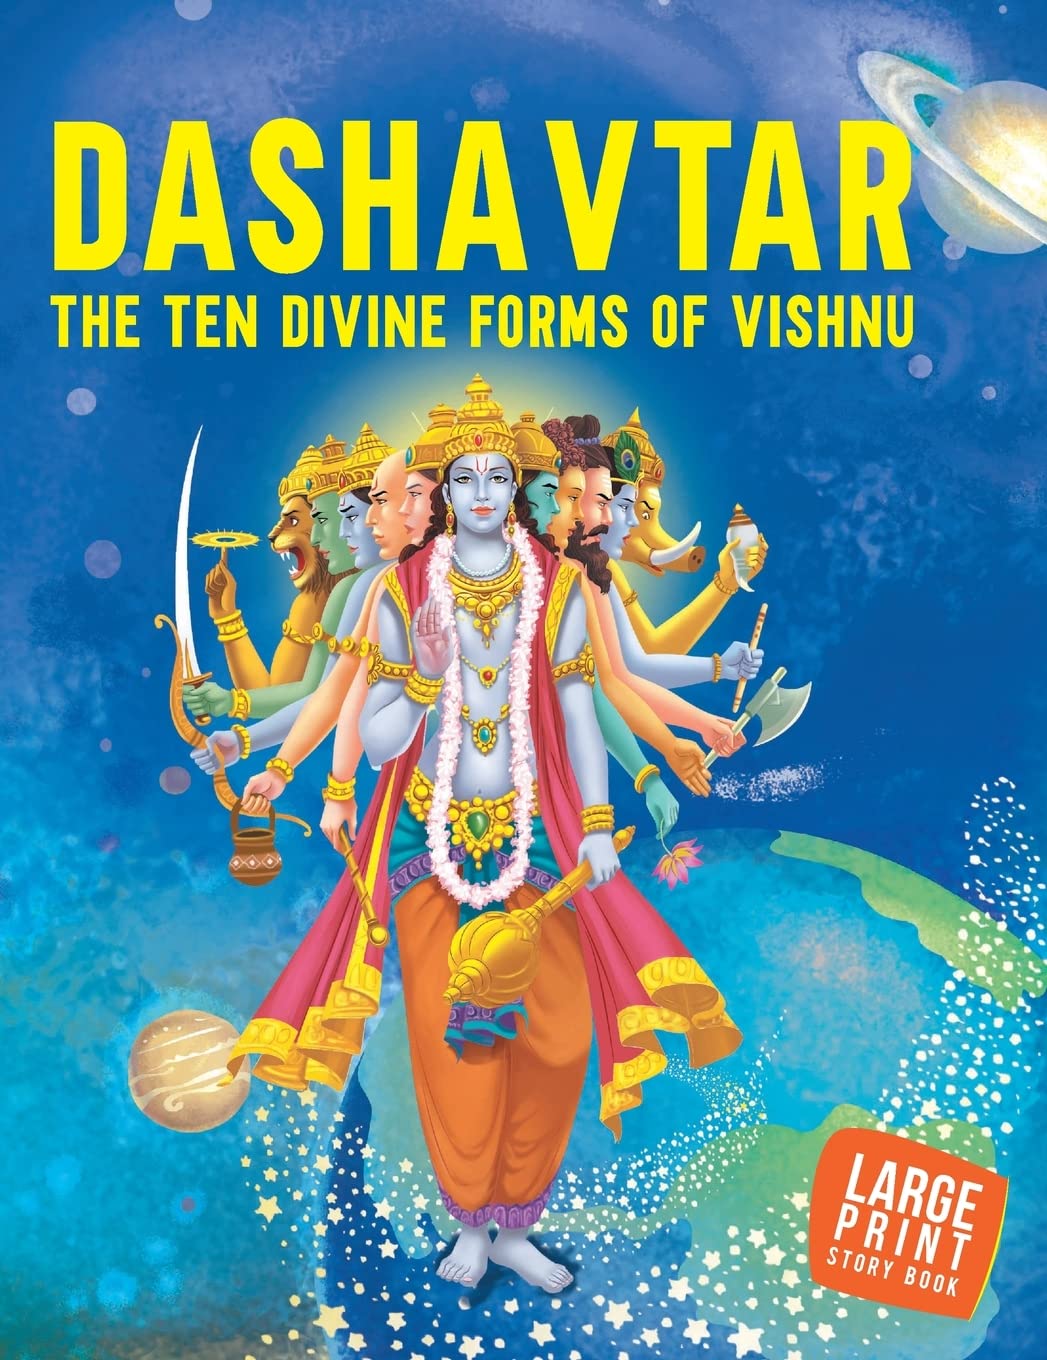 Large Print - Dashavtar The Ten Divine forms of Vishnu -Indian Mythology - classiblogger